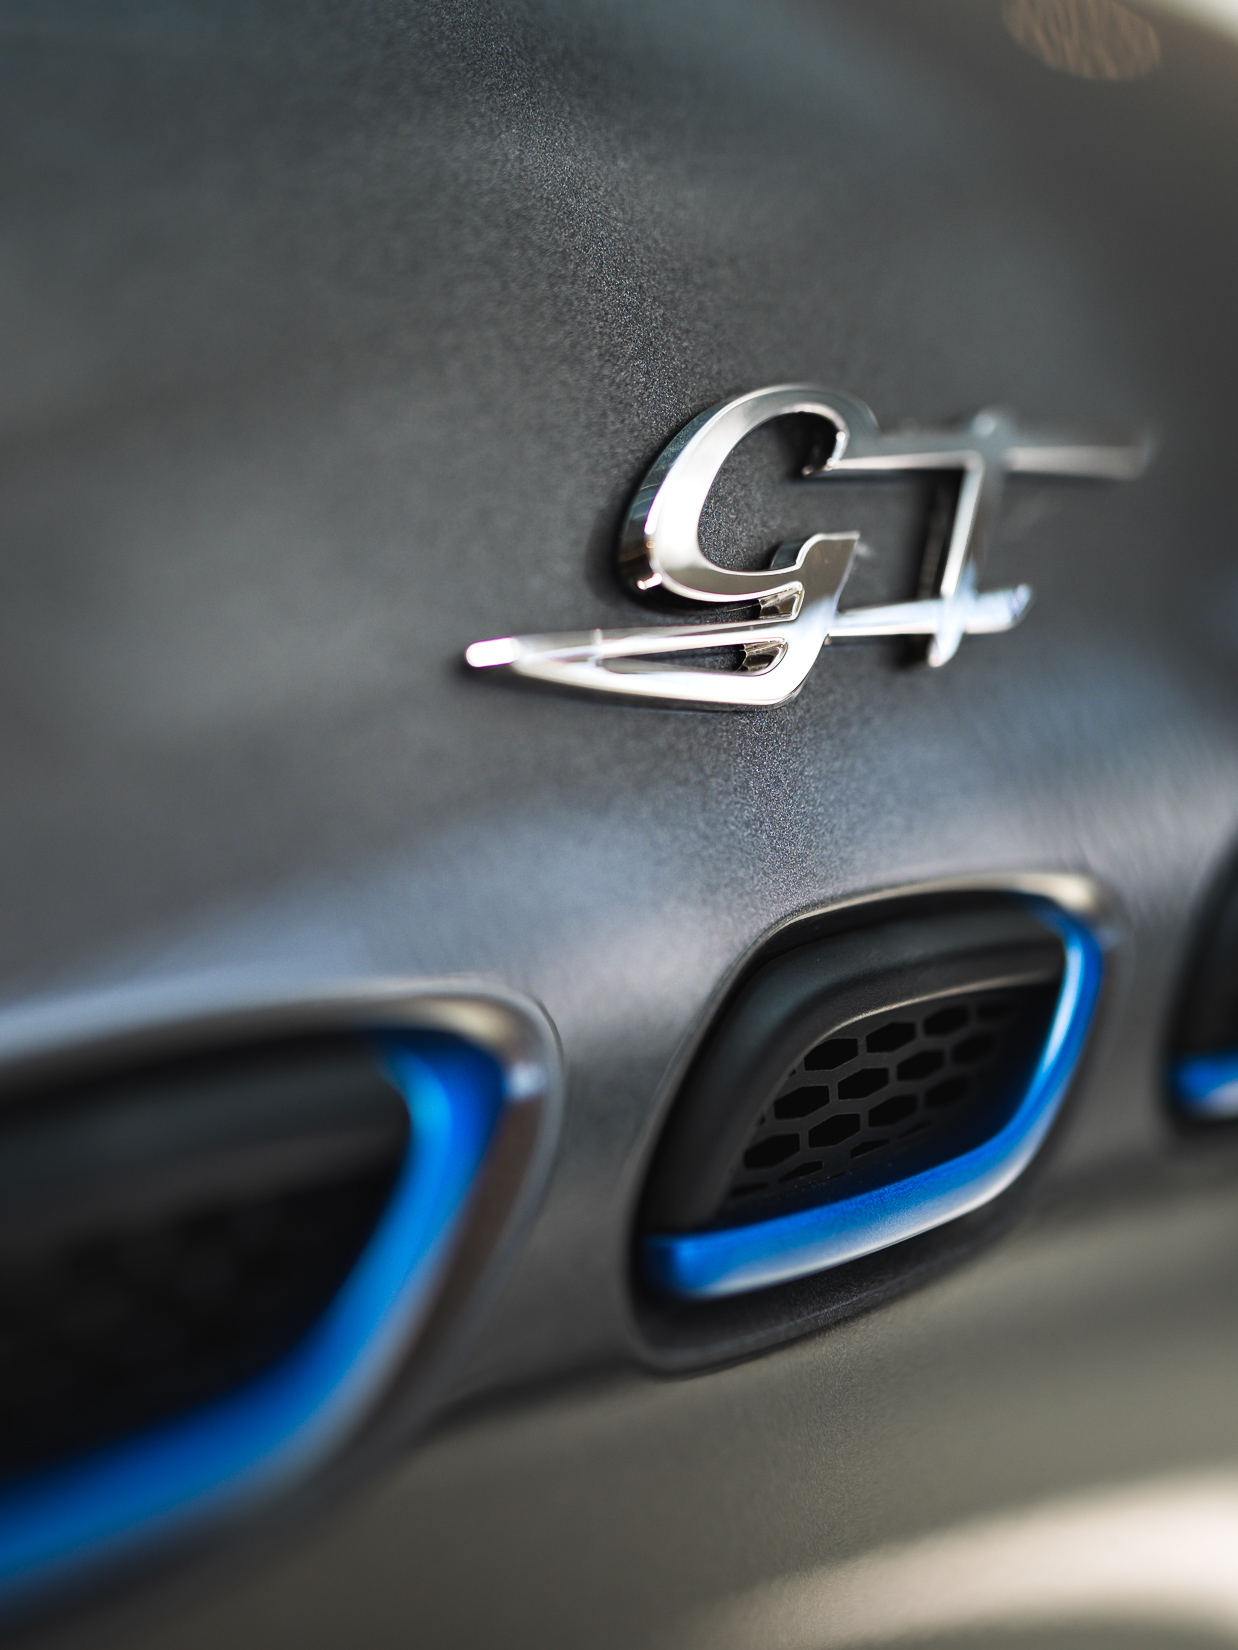 Fahrzeugdetailaufnahme vom verchromten GT Emblem und den Lufteinlässen des SUV-Modells Levante von Maserati.